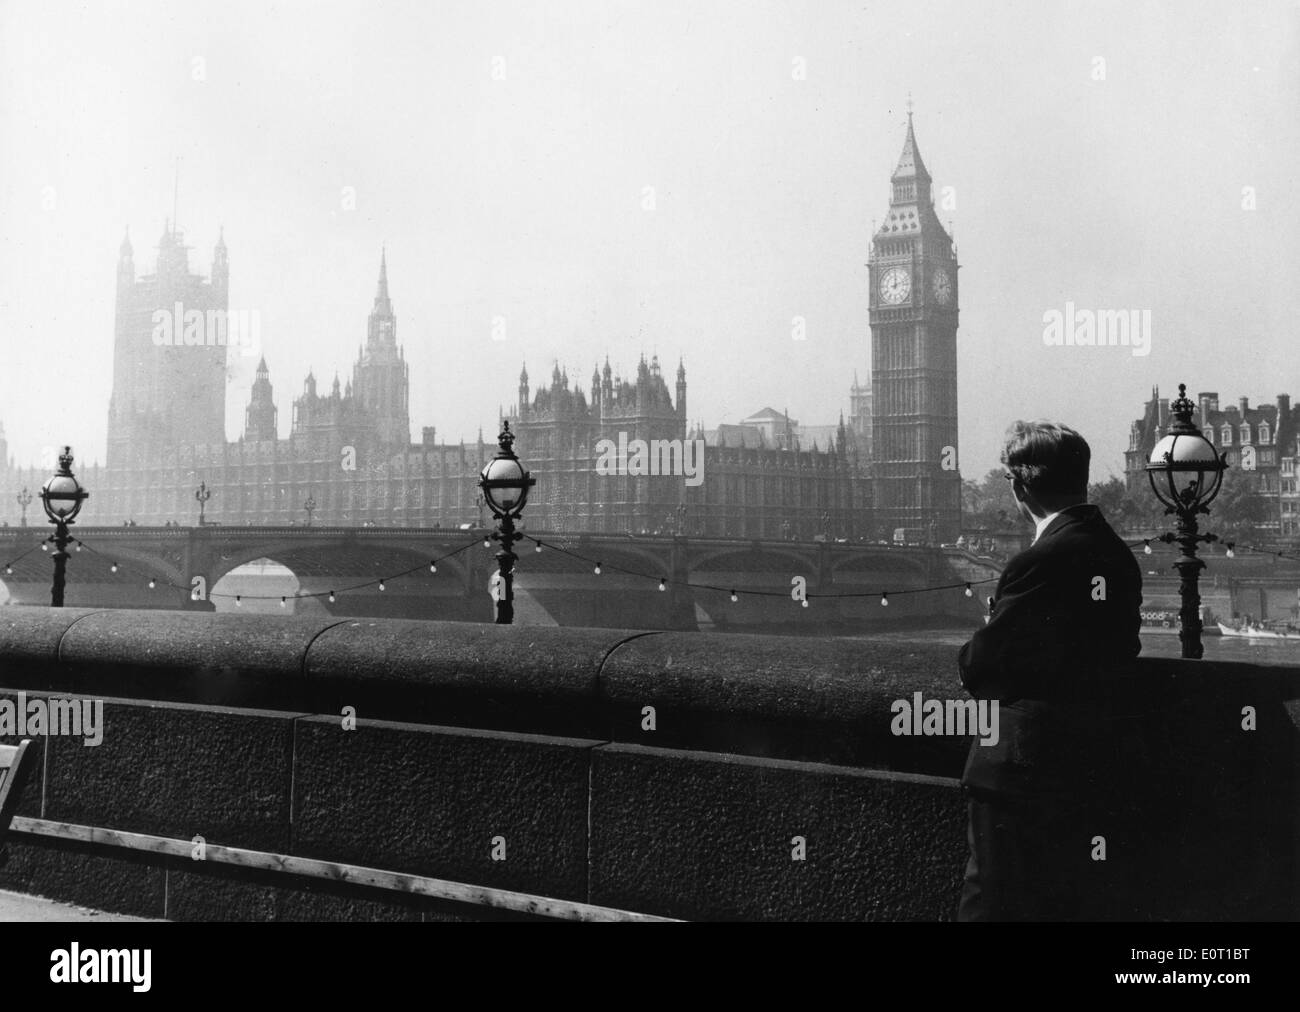 Data sconosciuta - Londra, Inghilterra, Regno Unito - ALBERT MURRAY guarda la Casa del Parlamento attraverso il fiume. Dove le prossime elezioni generali avranno luogo. Foto Stock